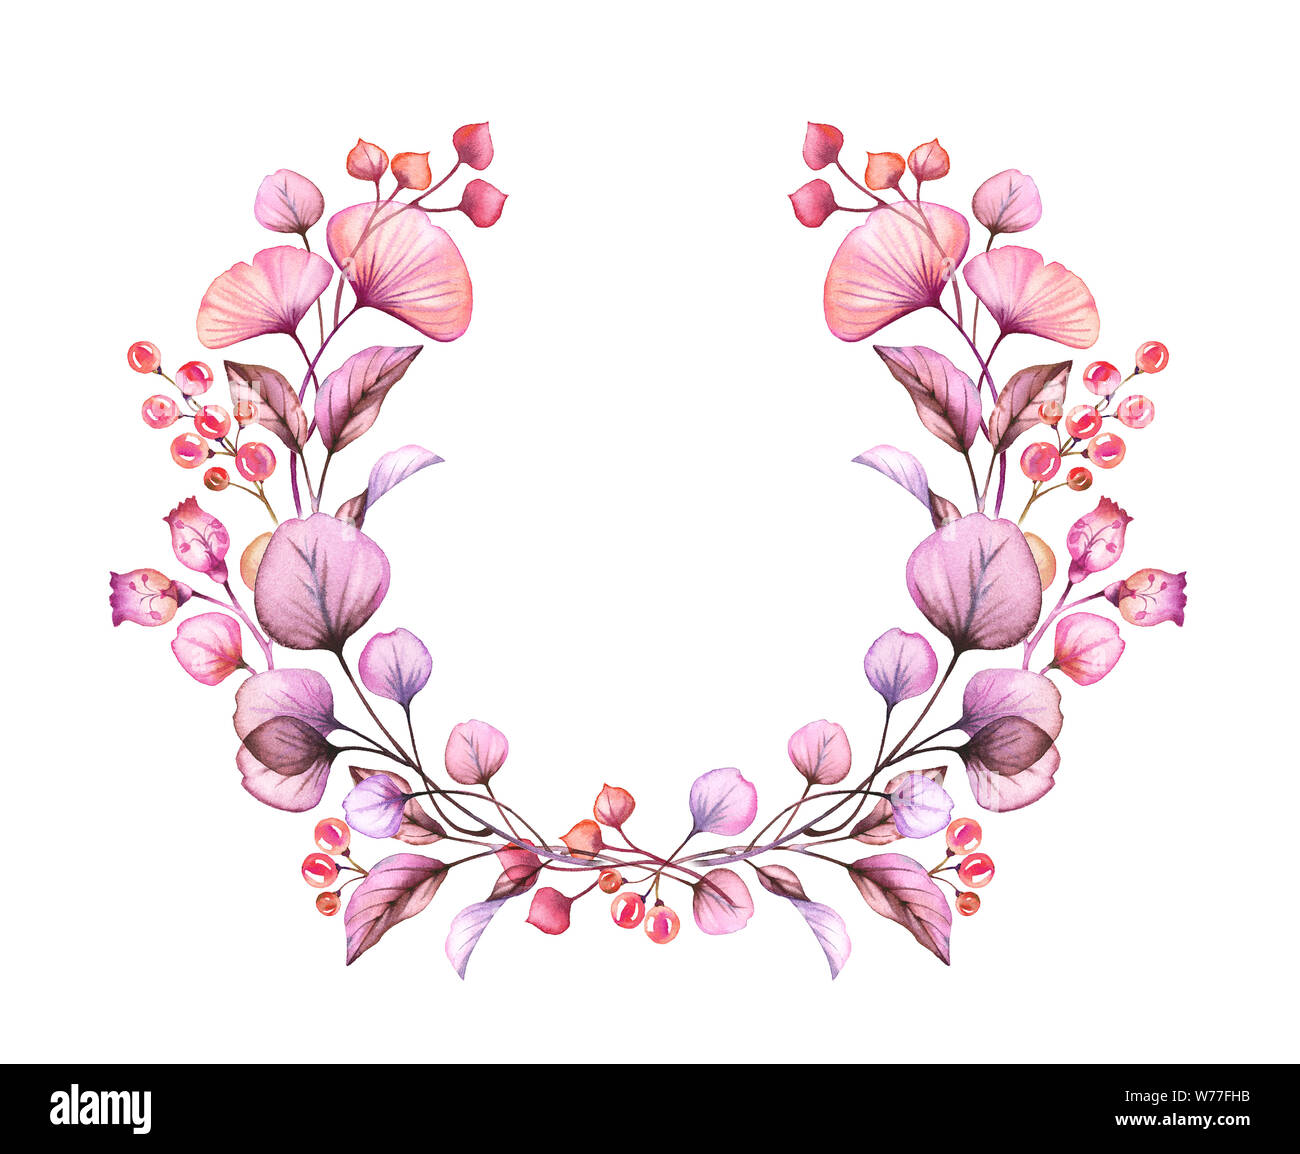 Acquerello trasparente ghirlanda di fiori isolati su bianco floreale disposizione rotonda di bacche e foglie, rami bundle in rosa pastello viola viola Foto Stock